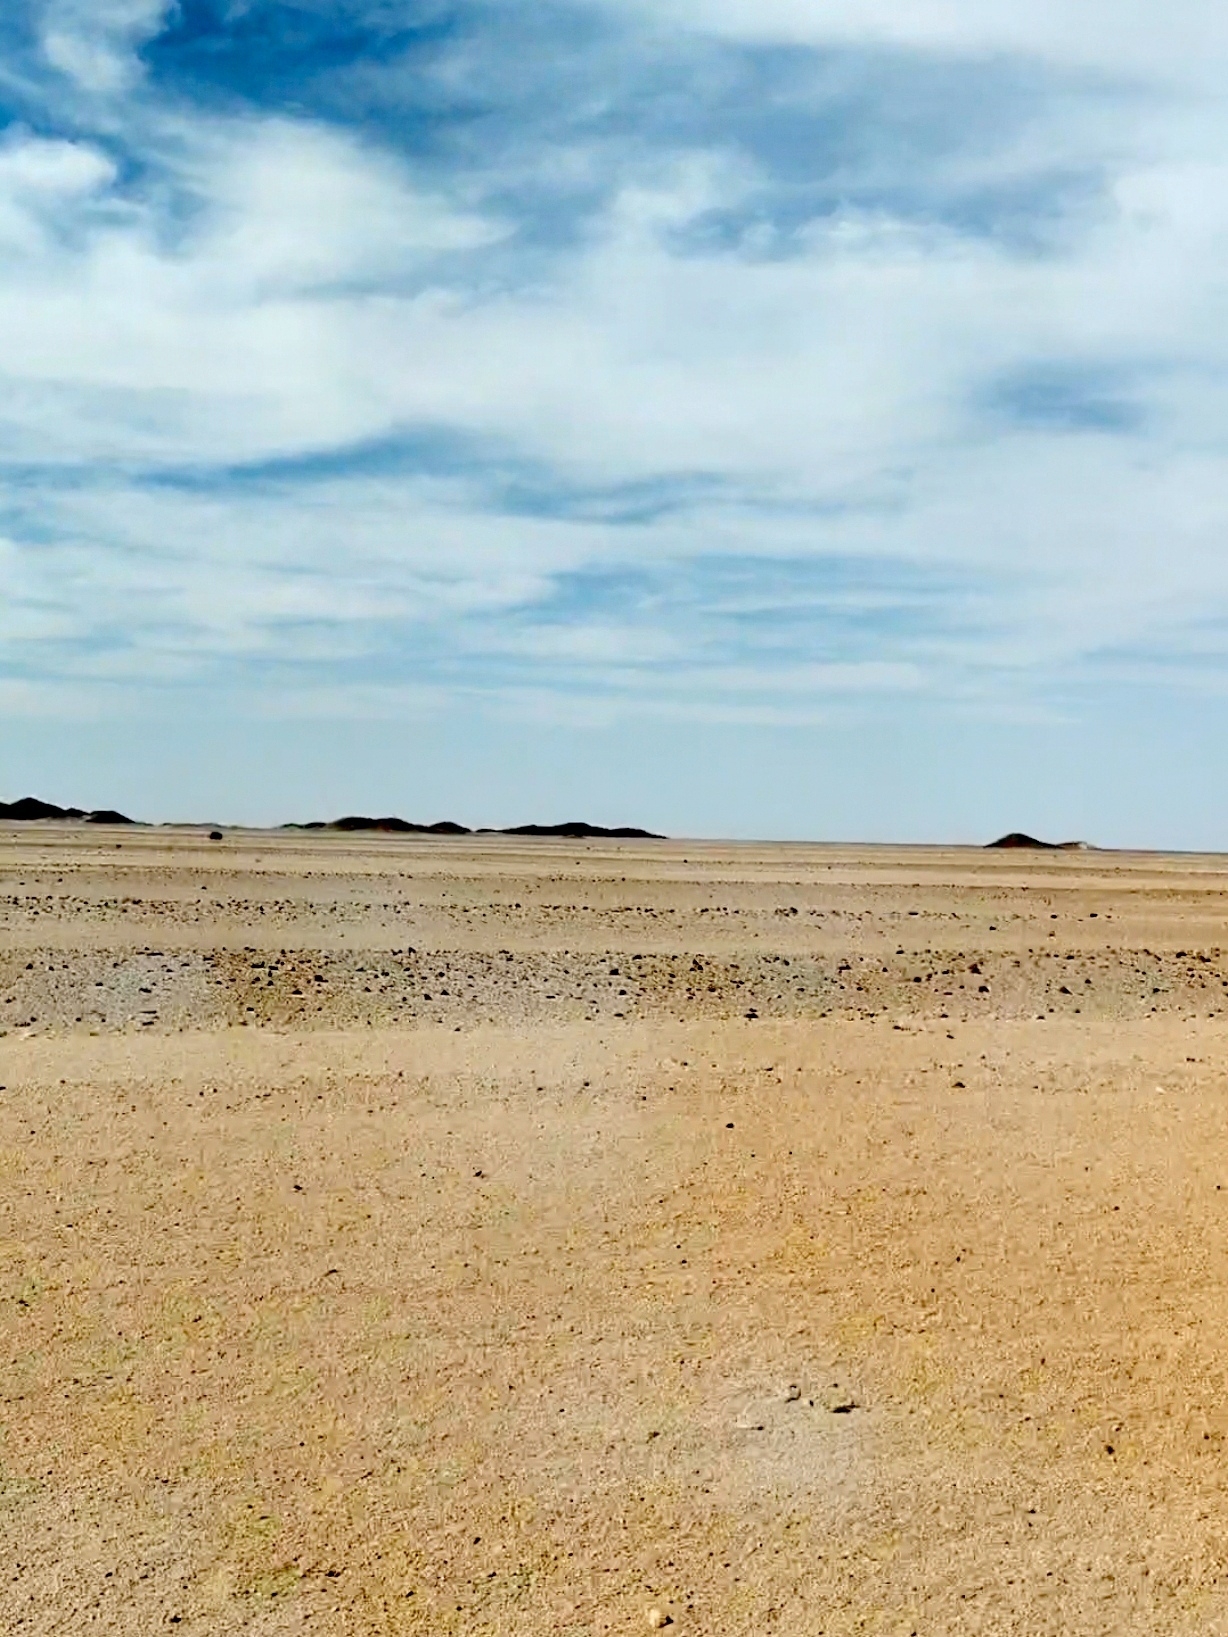 ﻿撒拉沙漠形成于250万年前，有940万平方公里，是世界上最大的沙漠，比整个美国还要大！沙漠覆盖了1